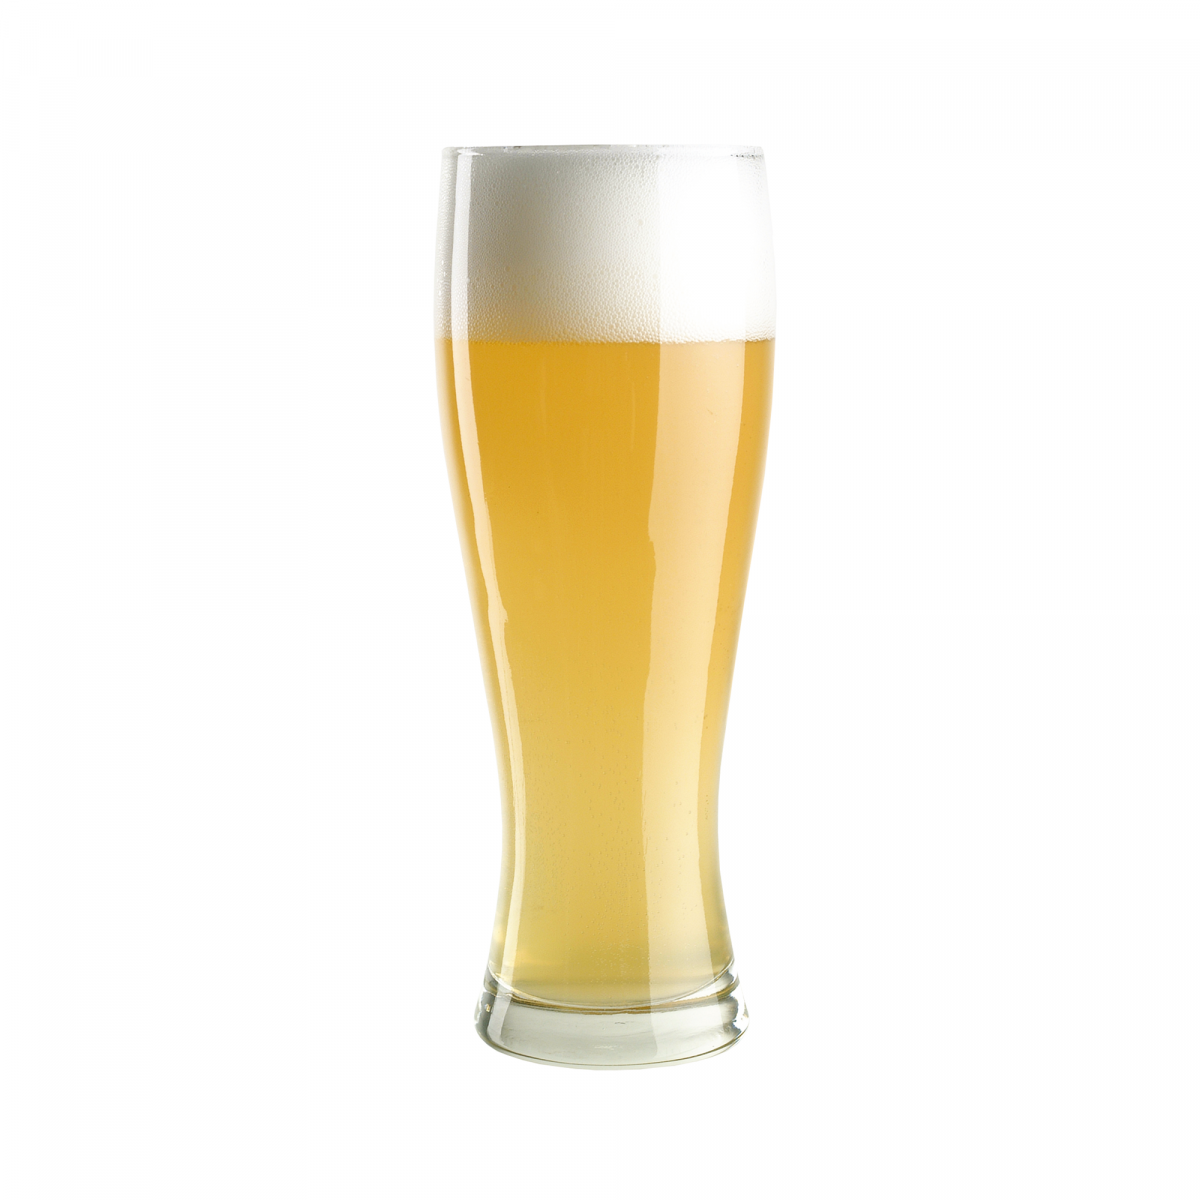 Brewferm kit de bière Belgian Wit